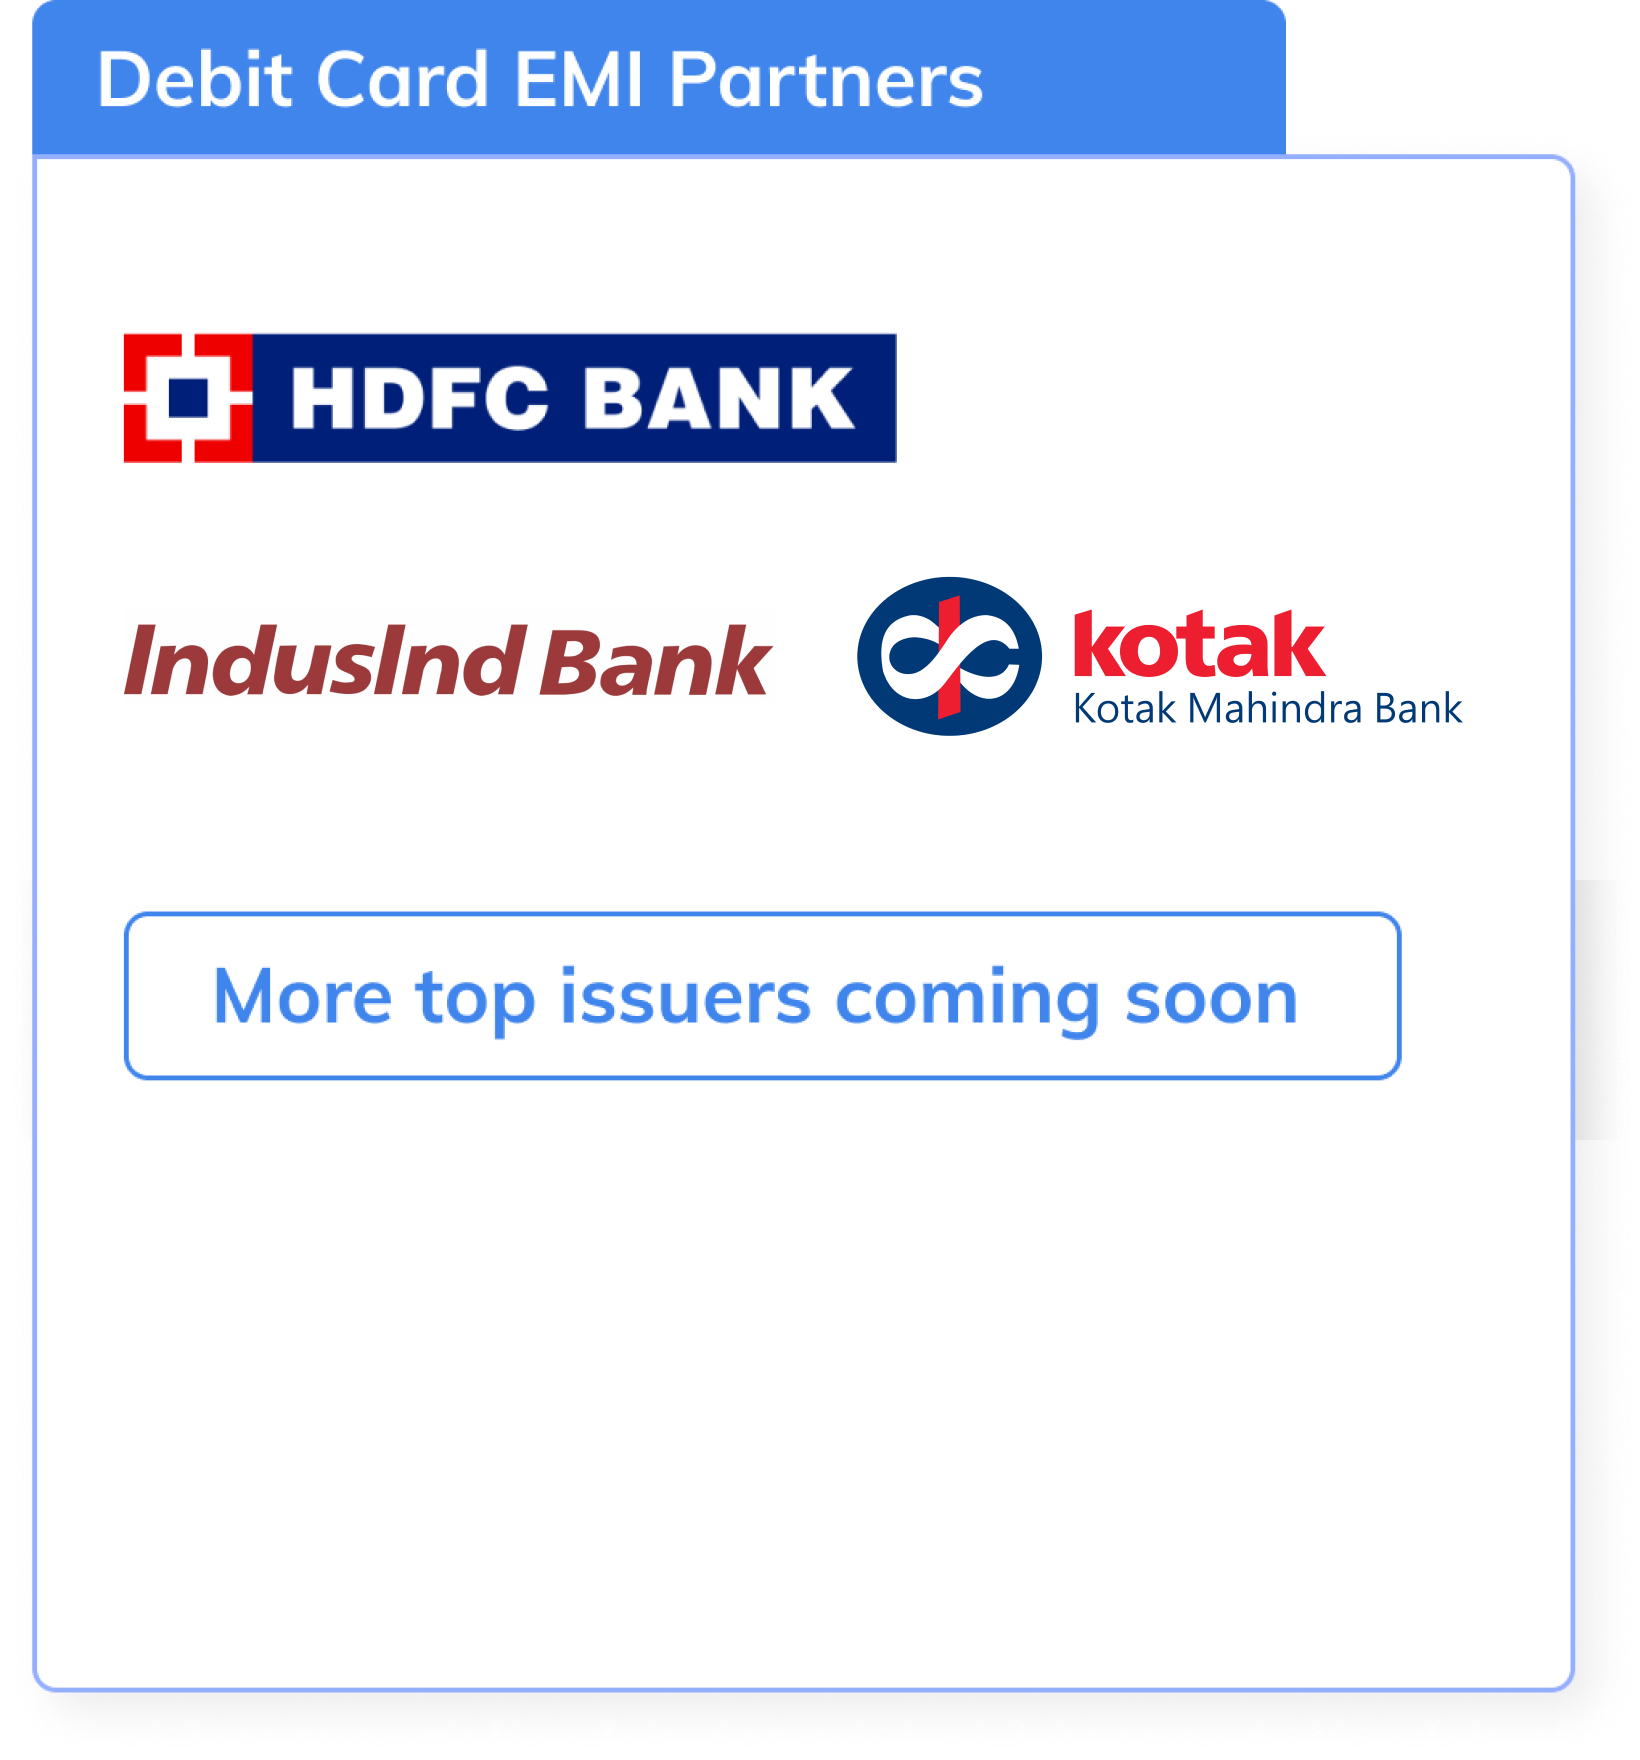 EMI Bank Partners partner2 mobile